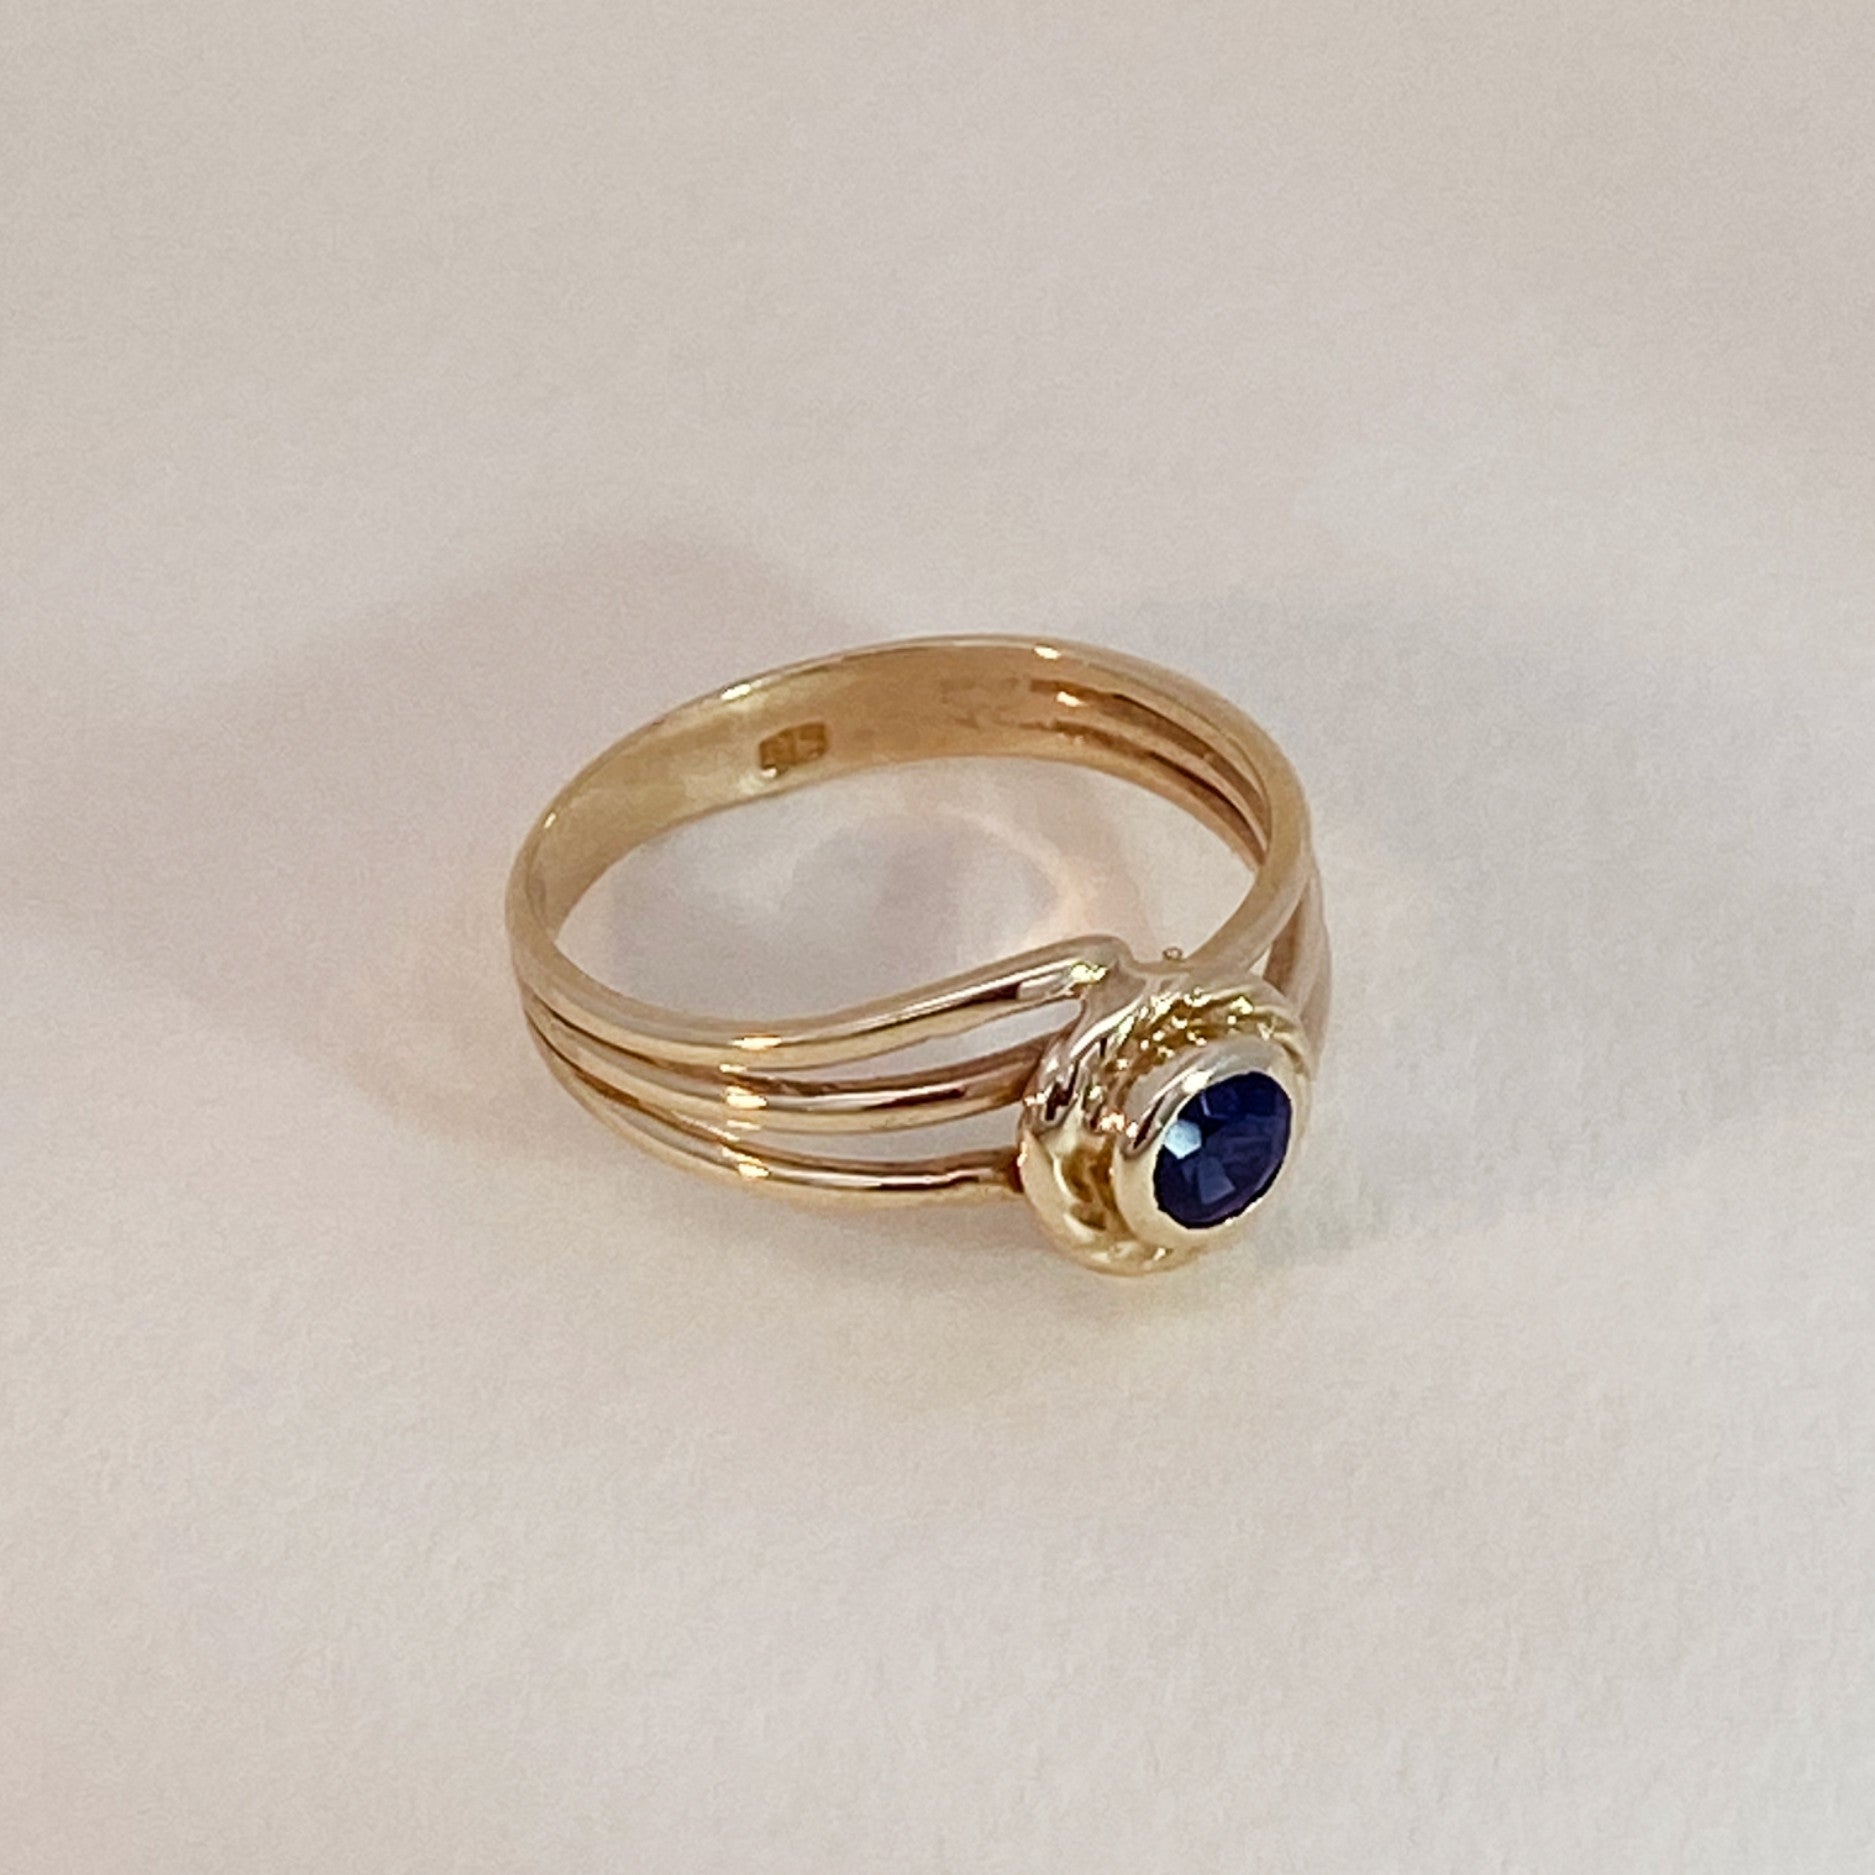 Vintage blauwe saffier ring